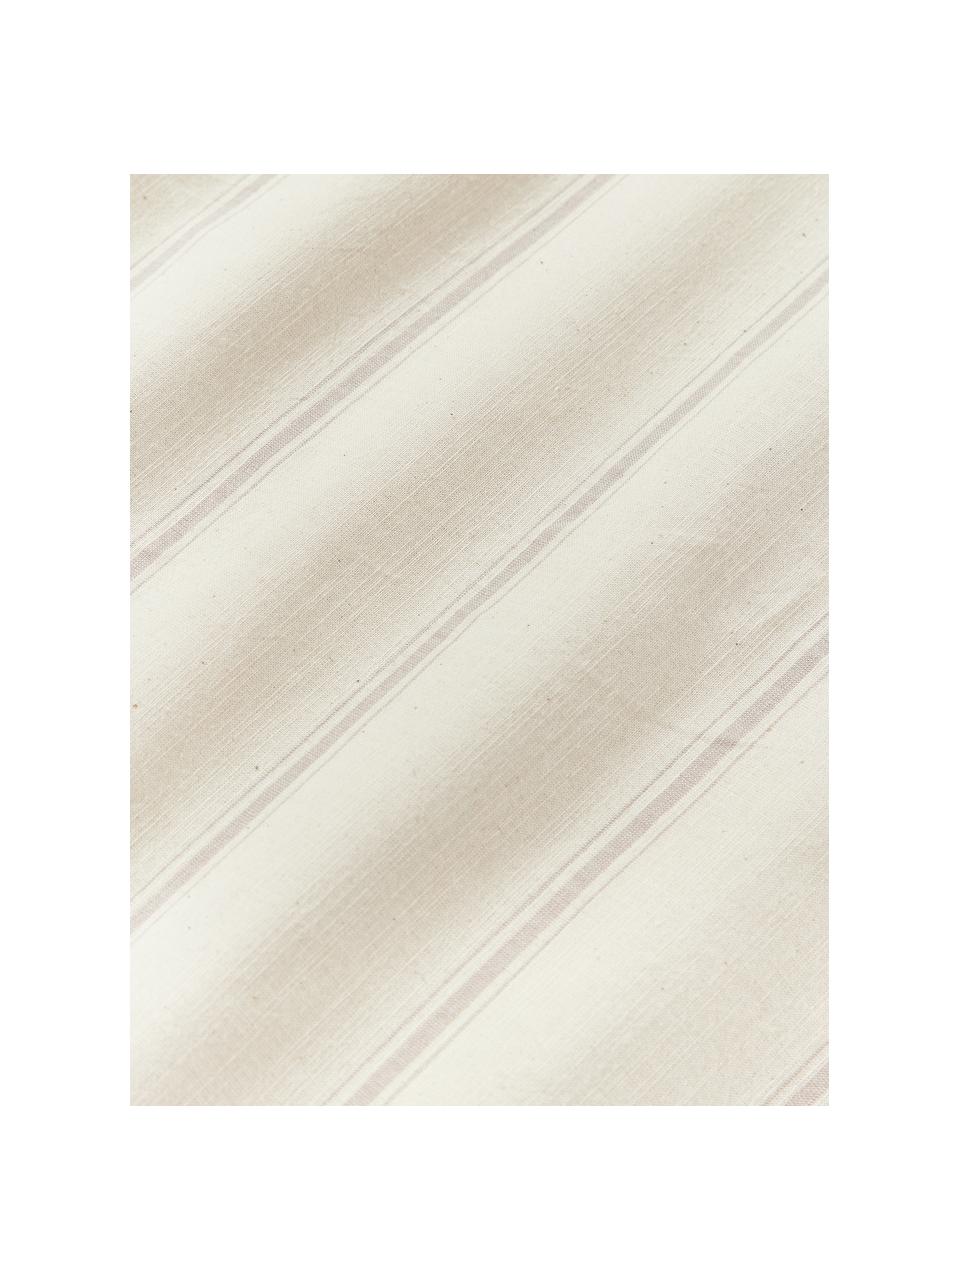 Bavlnená obliečka na paplón s vypraným vzhľadom Caspian, 100 %  bavlna

Hustota vlákna 110 TC, kvalita štandard

Posteľná bielizeň z bavlny je príjemná na dotyk, dobre absorbuje vlhkosť a je vhodná pre alergikov
Látka bola podrobená špeciálnemu procesu „Softwash”, ktorý zabezpečuje nepravidelný vypraný vzhľad, je mäkká, pružná a má prirodzený krčivý vzhľad, ktorý nevyžaduje žehlenie a pôsobí útulne

Materiál použitý v tomto produkte bol testovaný na škodlivé látky a certifikovaný podľa STANDARD 100 od OEKO-TEX®, 4854CIT, CITEVE, Béžová, lomená biela, Š 200 x D 200 cm